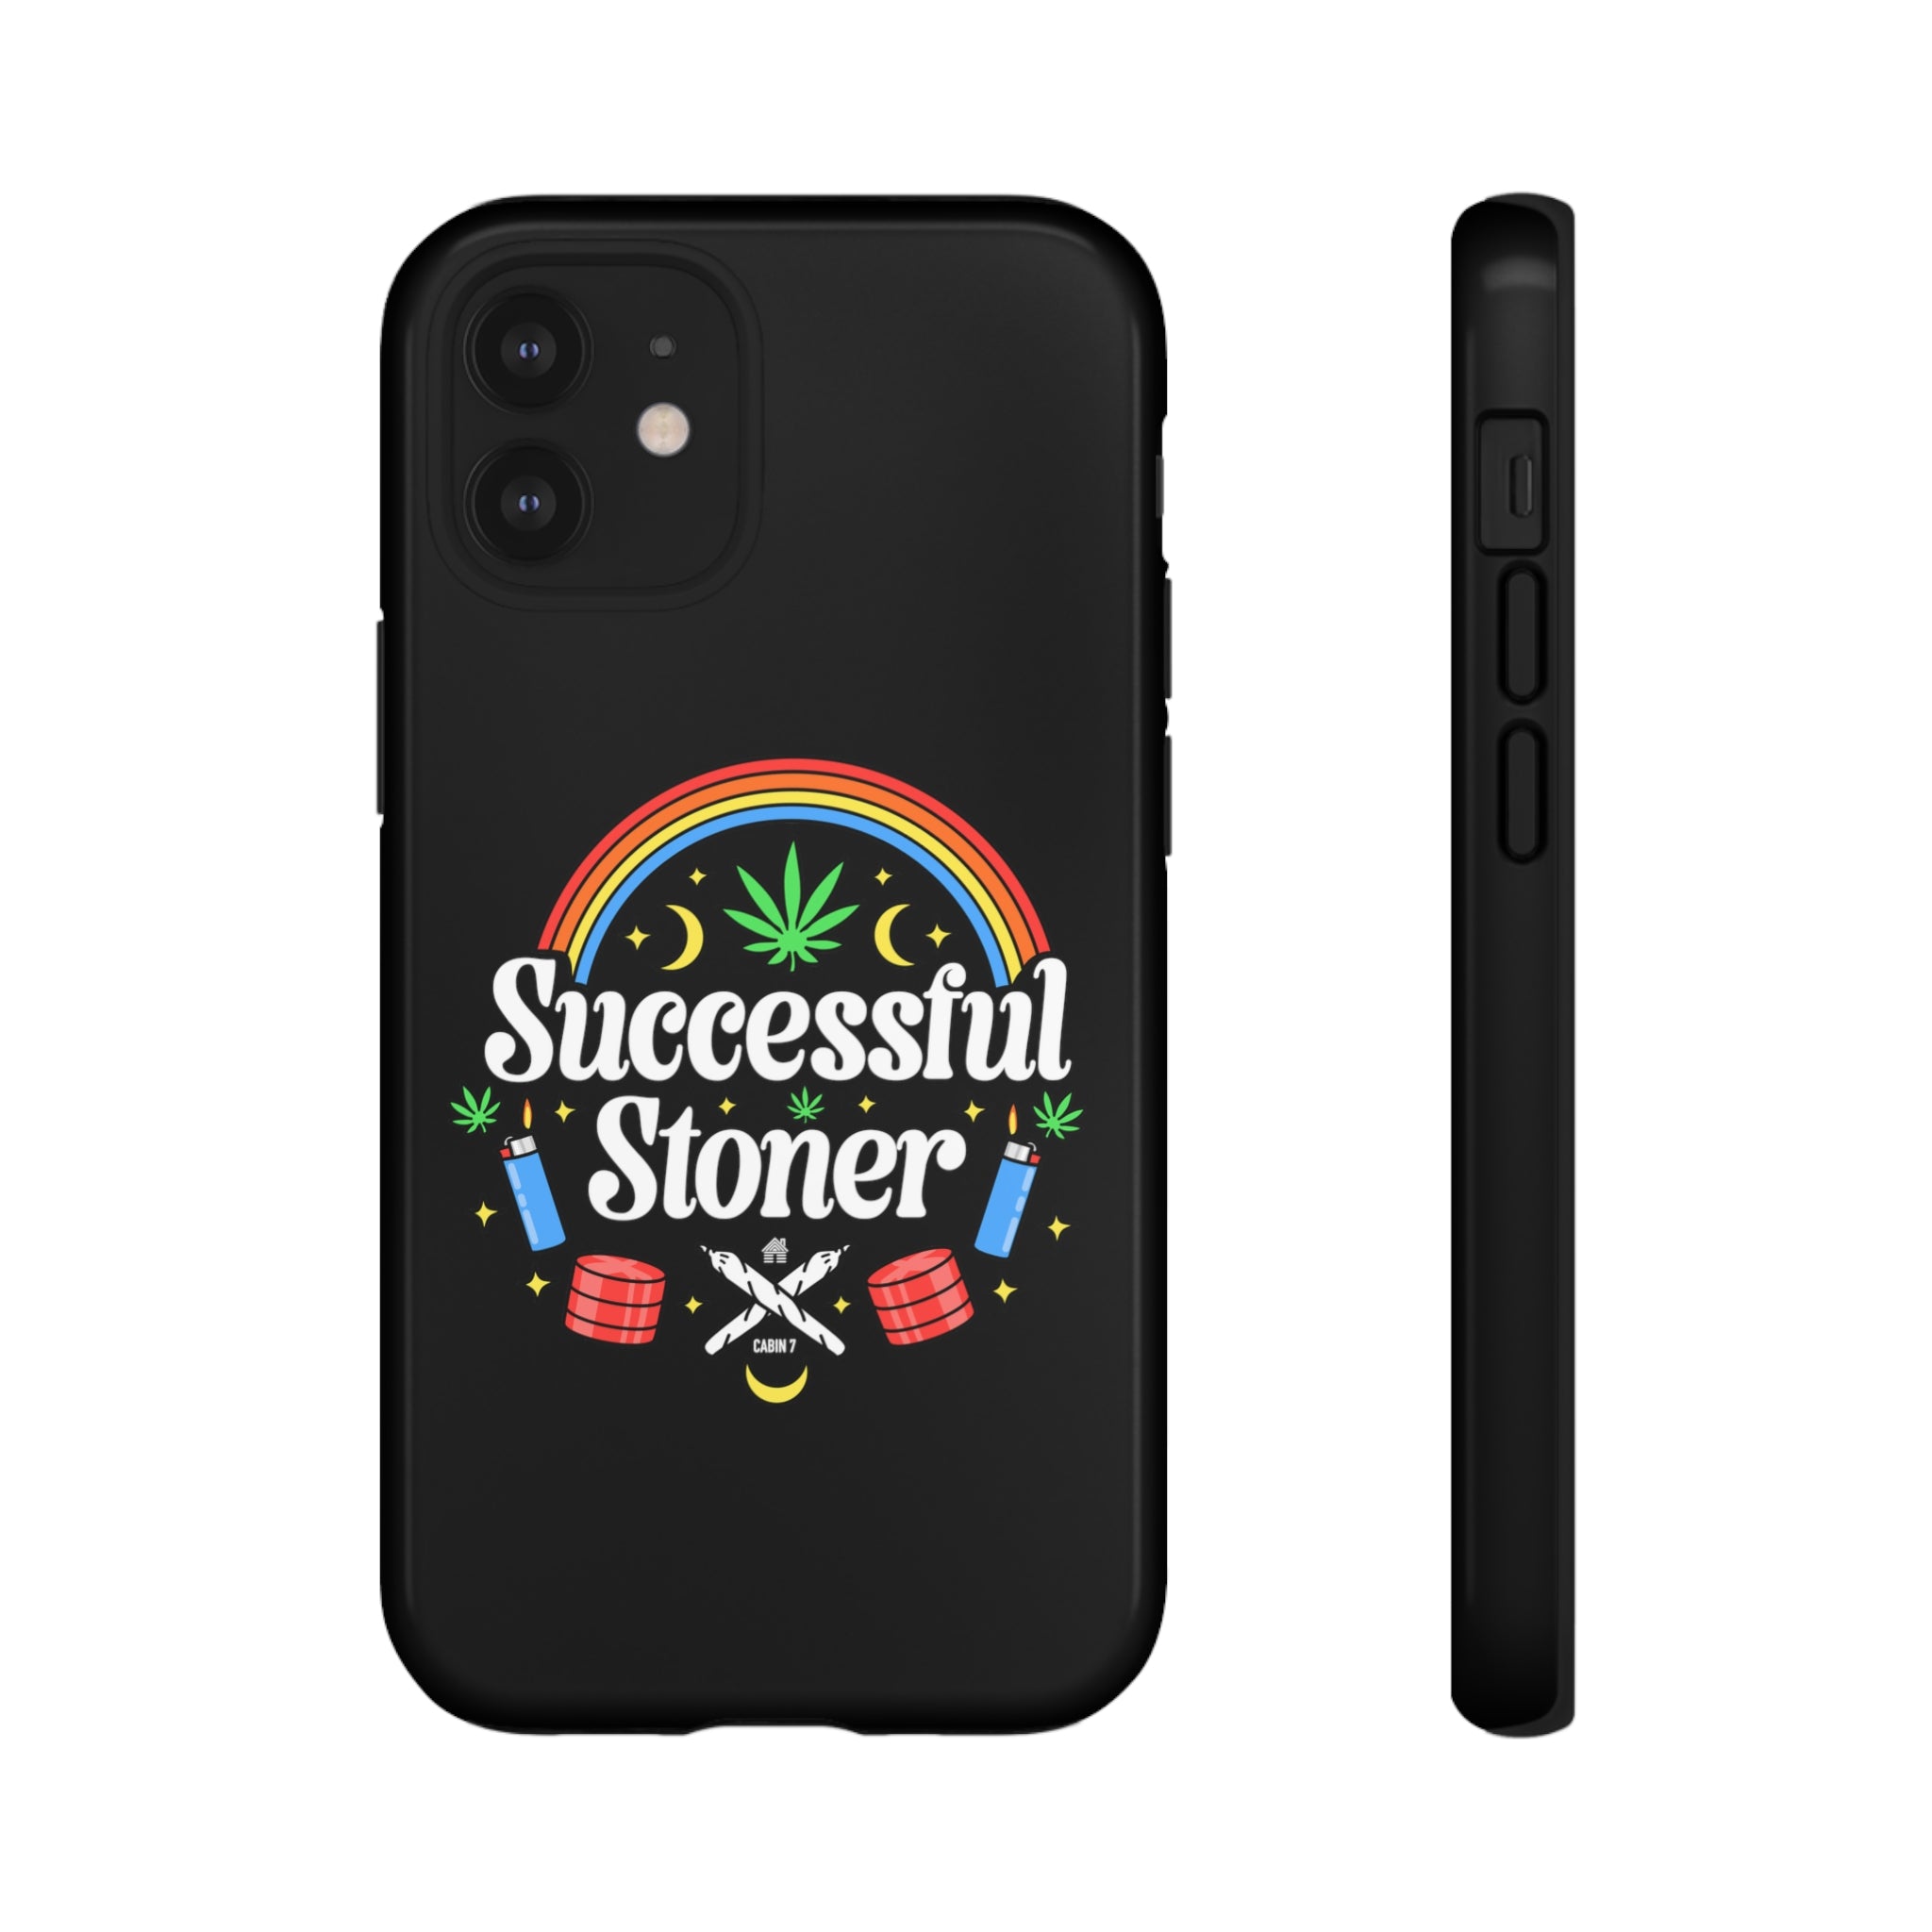 Successful Stoner Phone Case